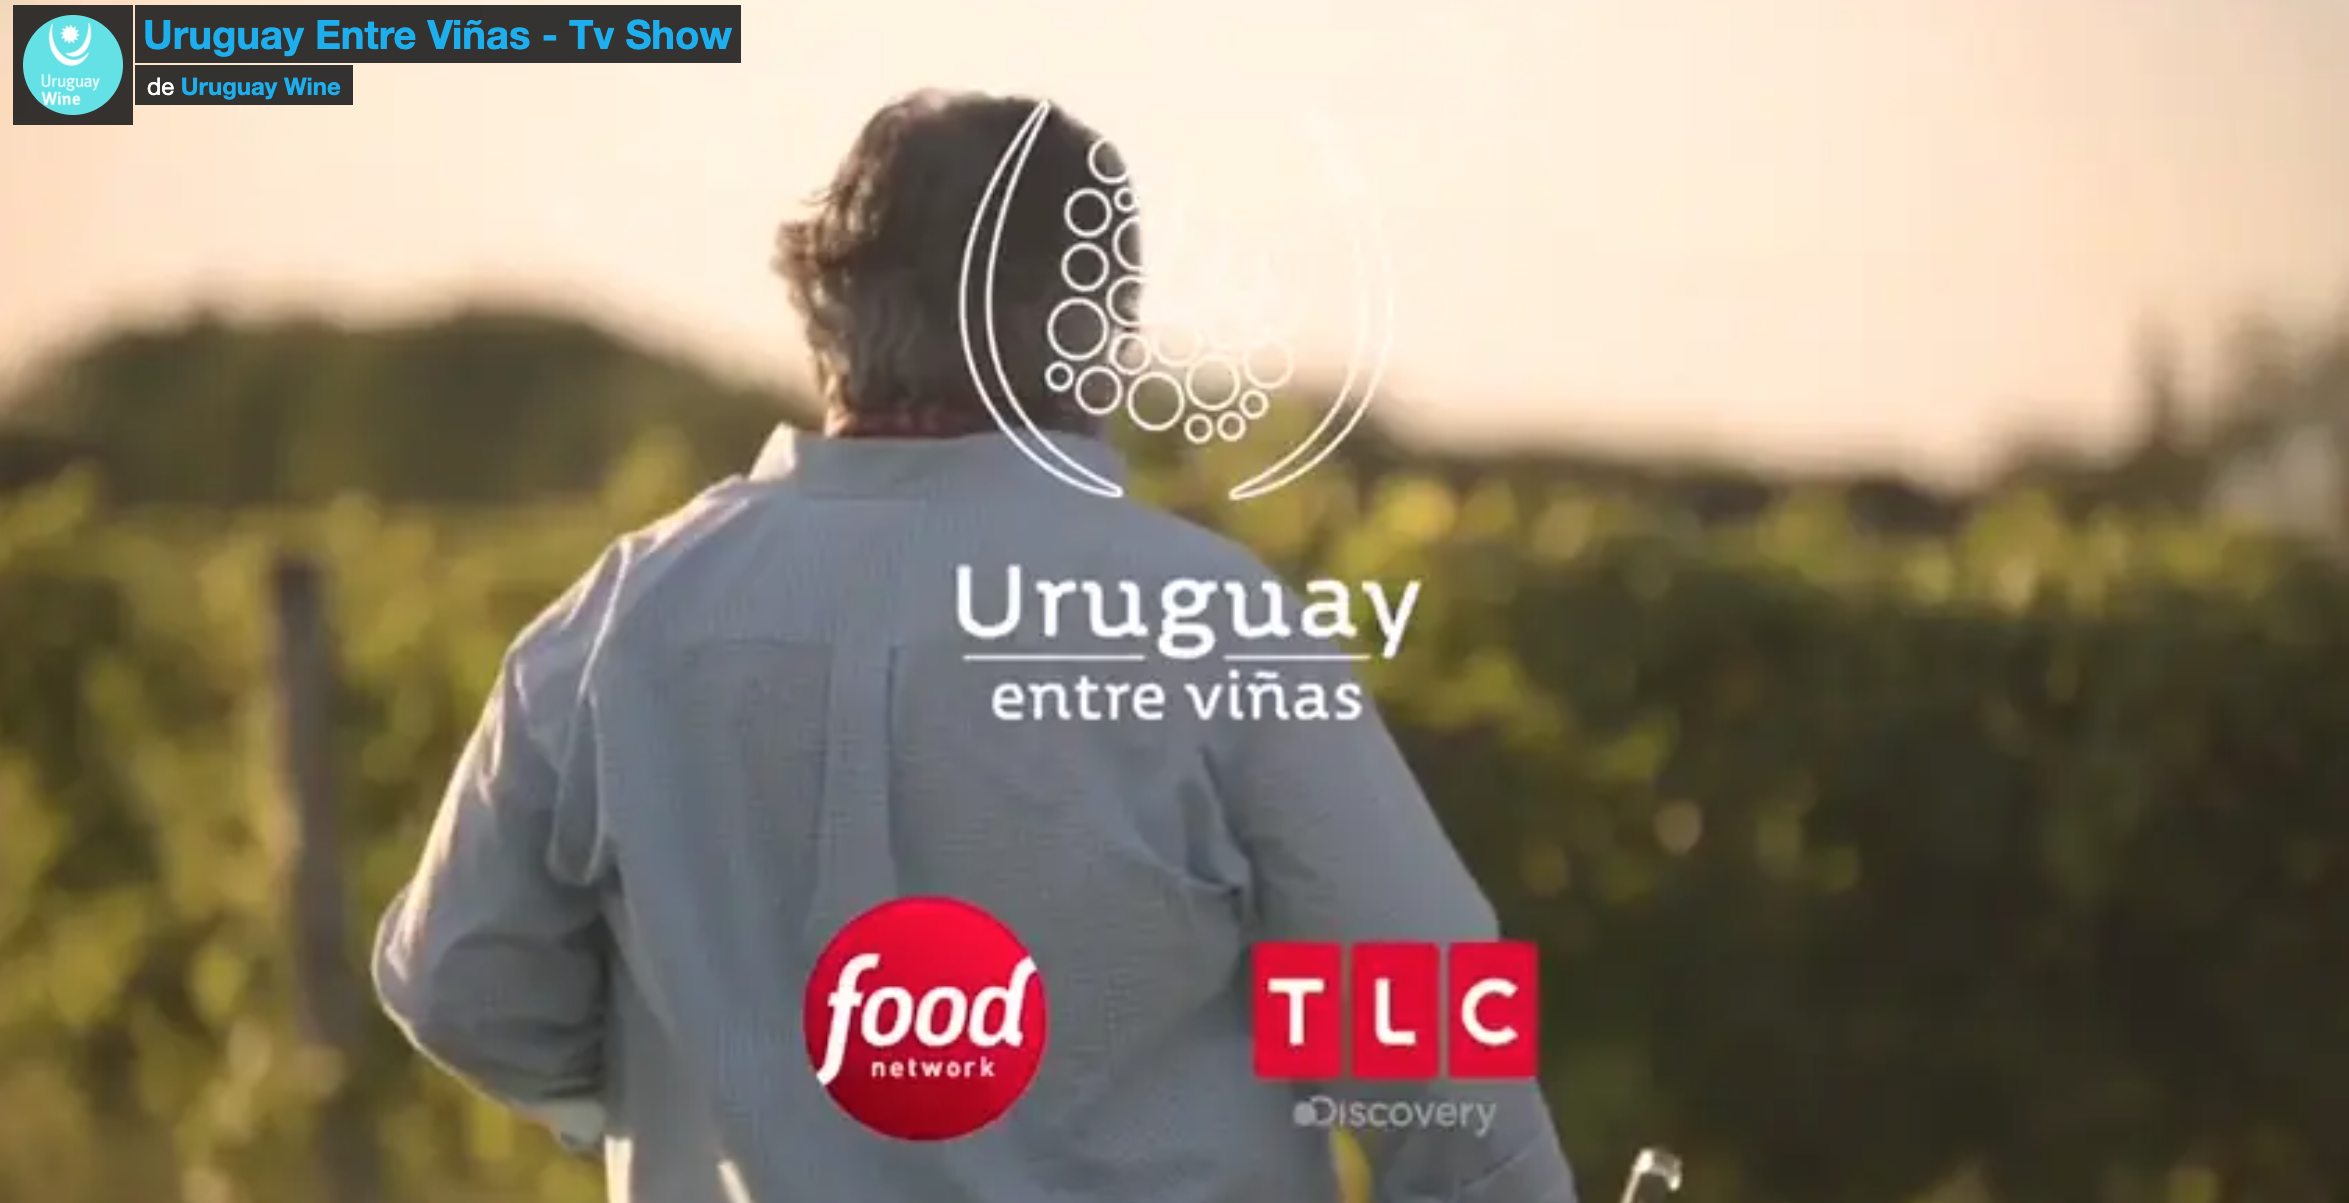 TV Show: Uruguay Entre Viñas